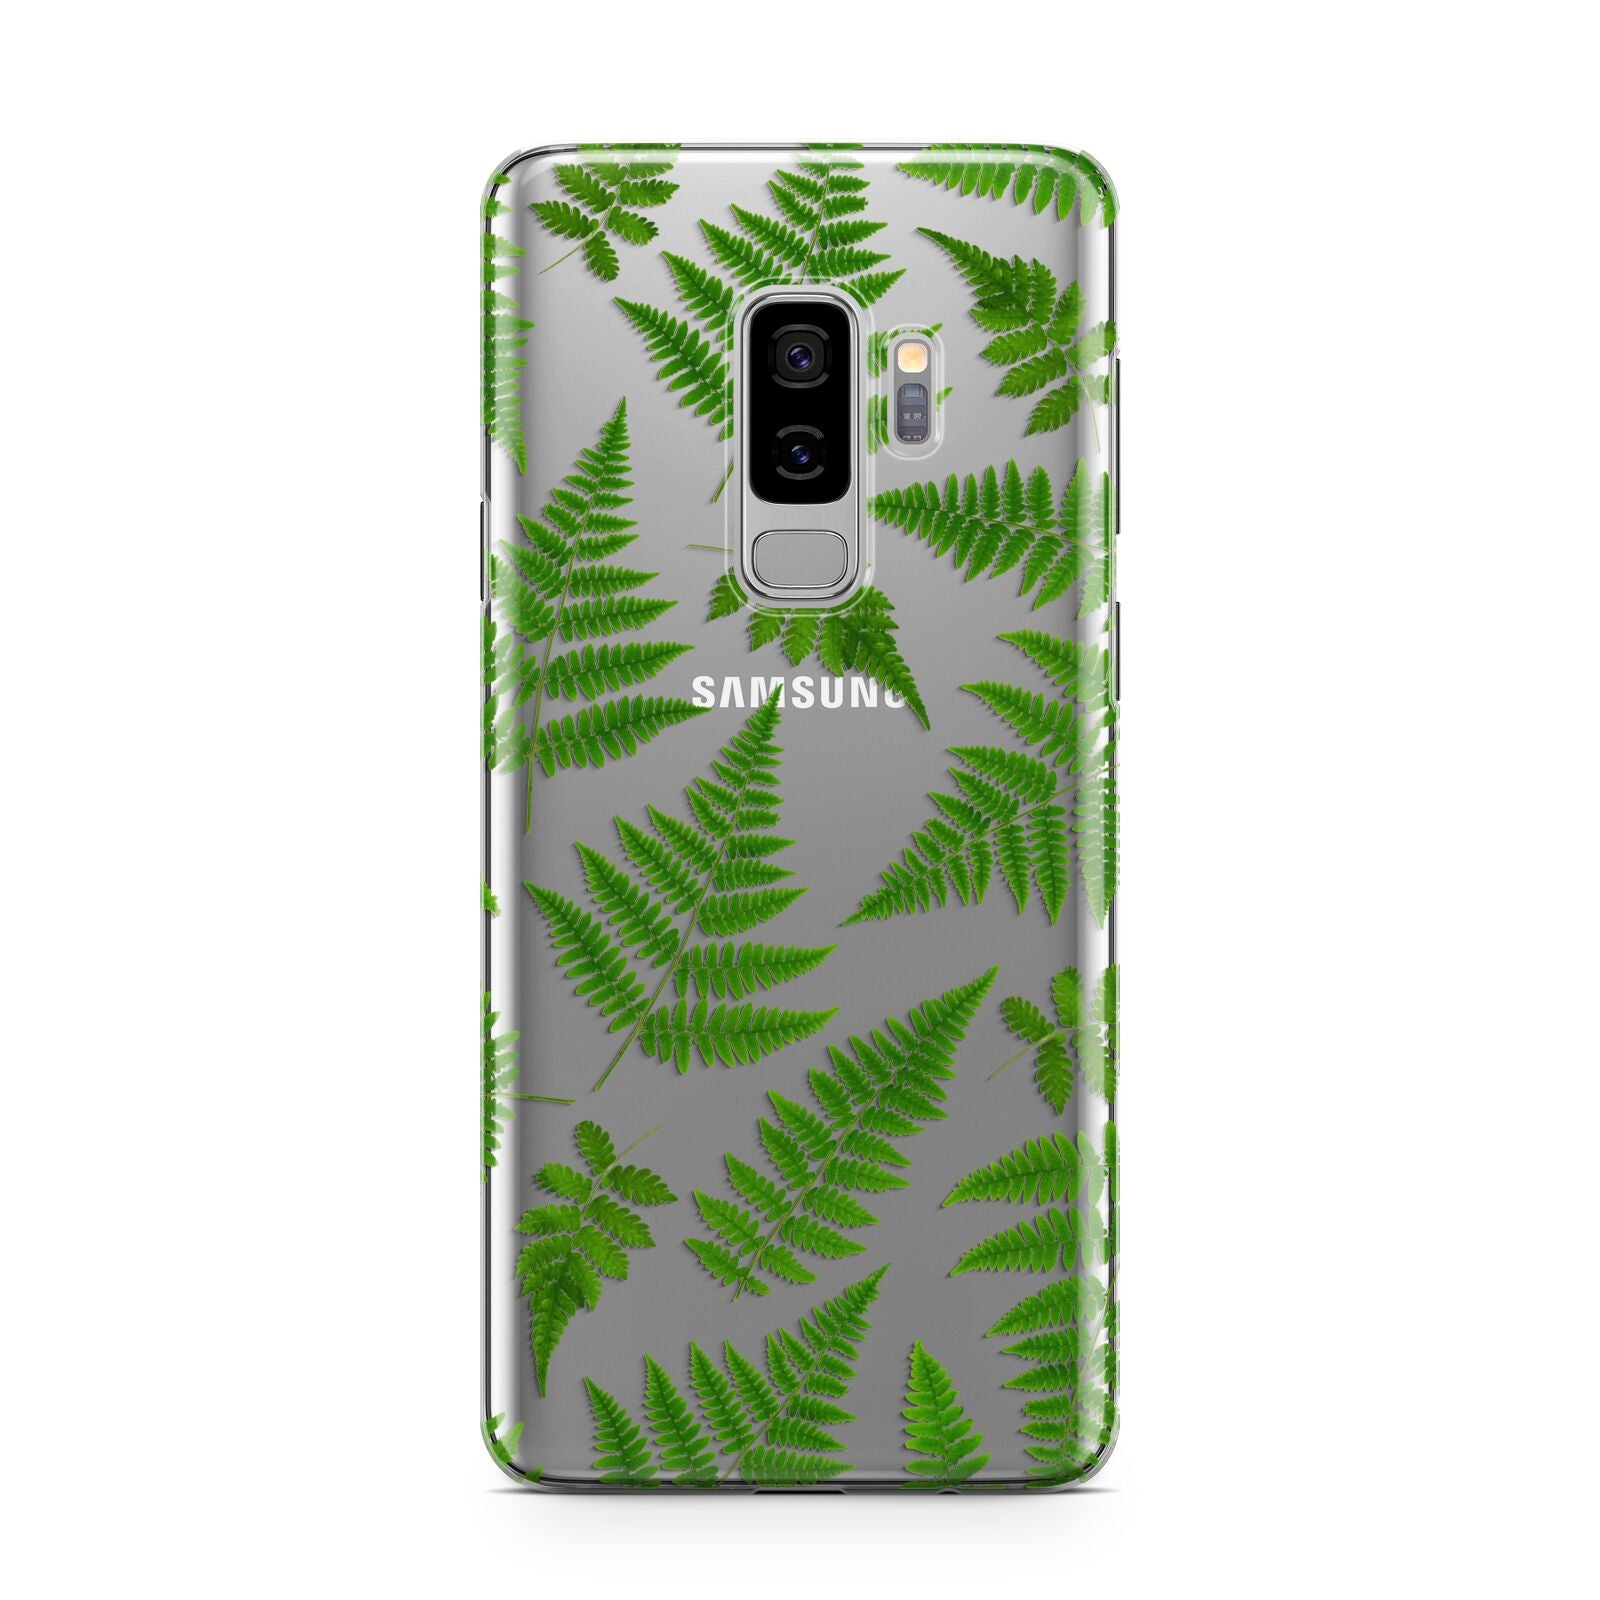 Fern Leaf Samsung Galaxy S9 Plus Case on Silver phone